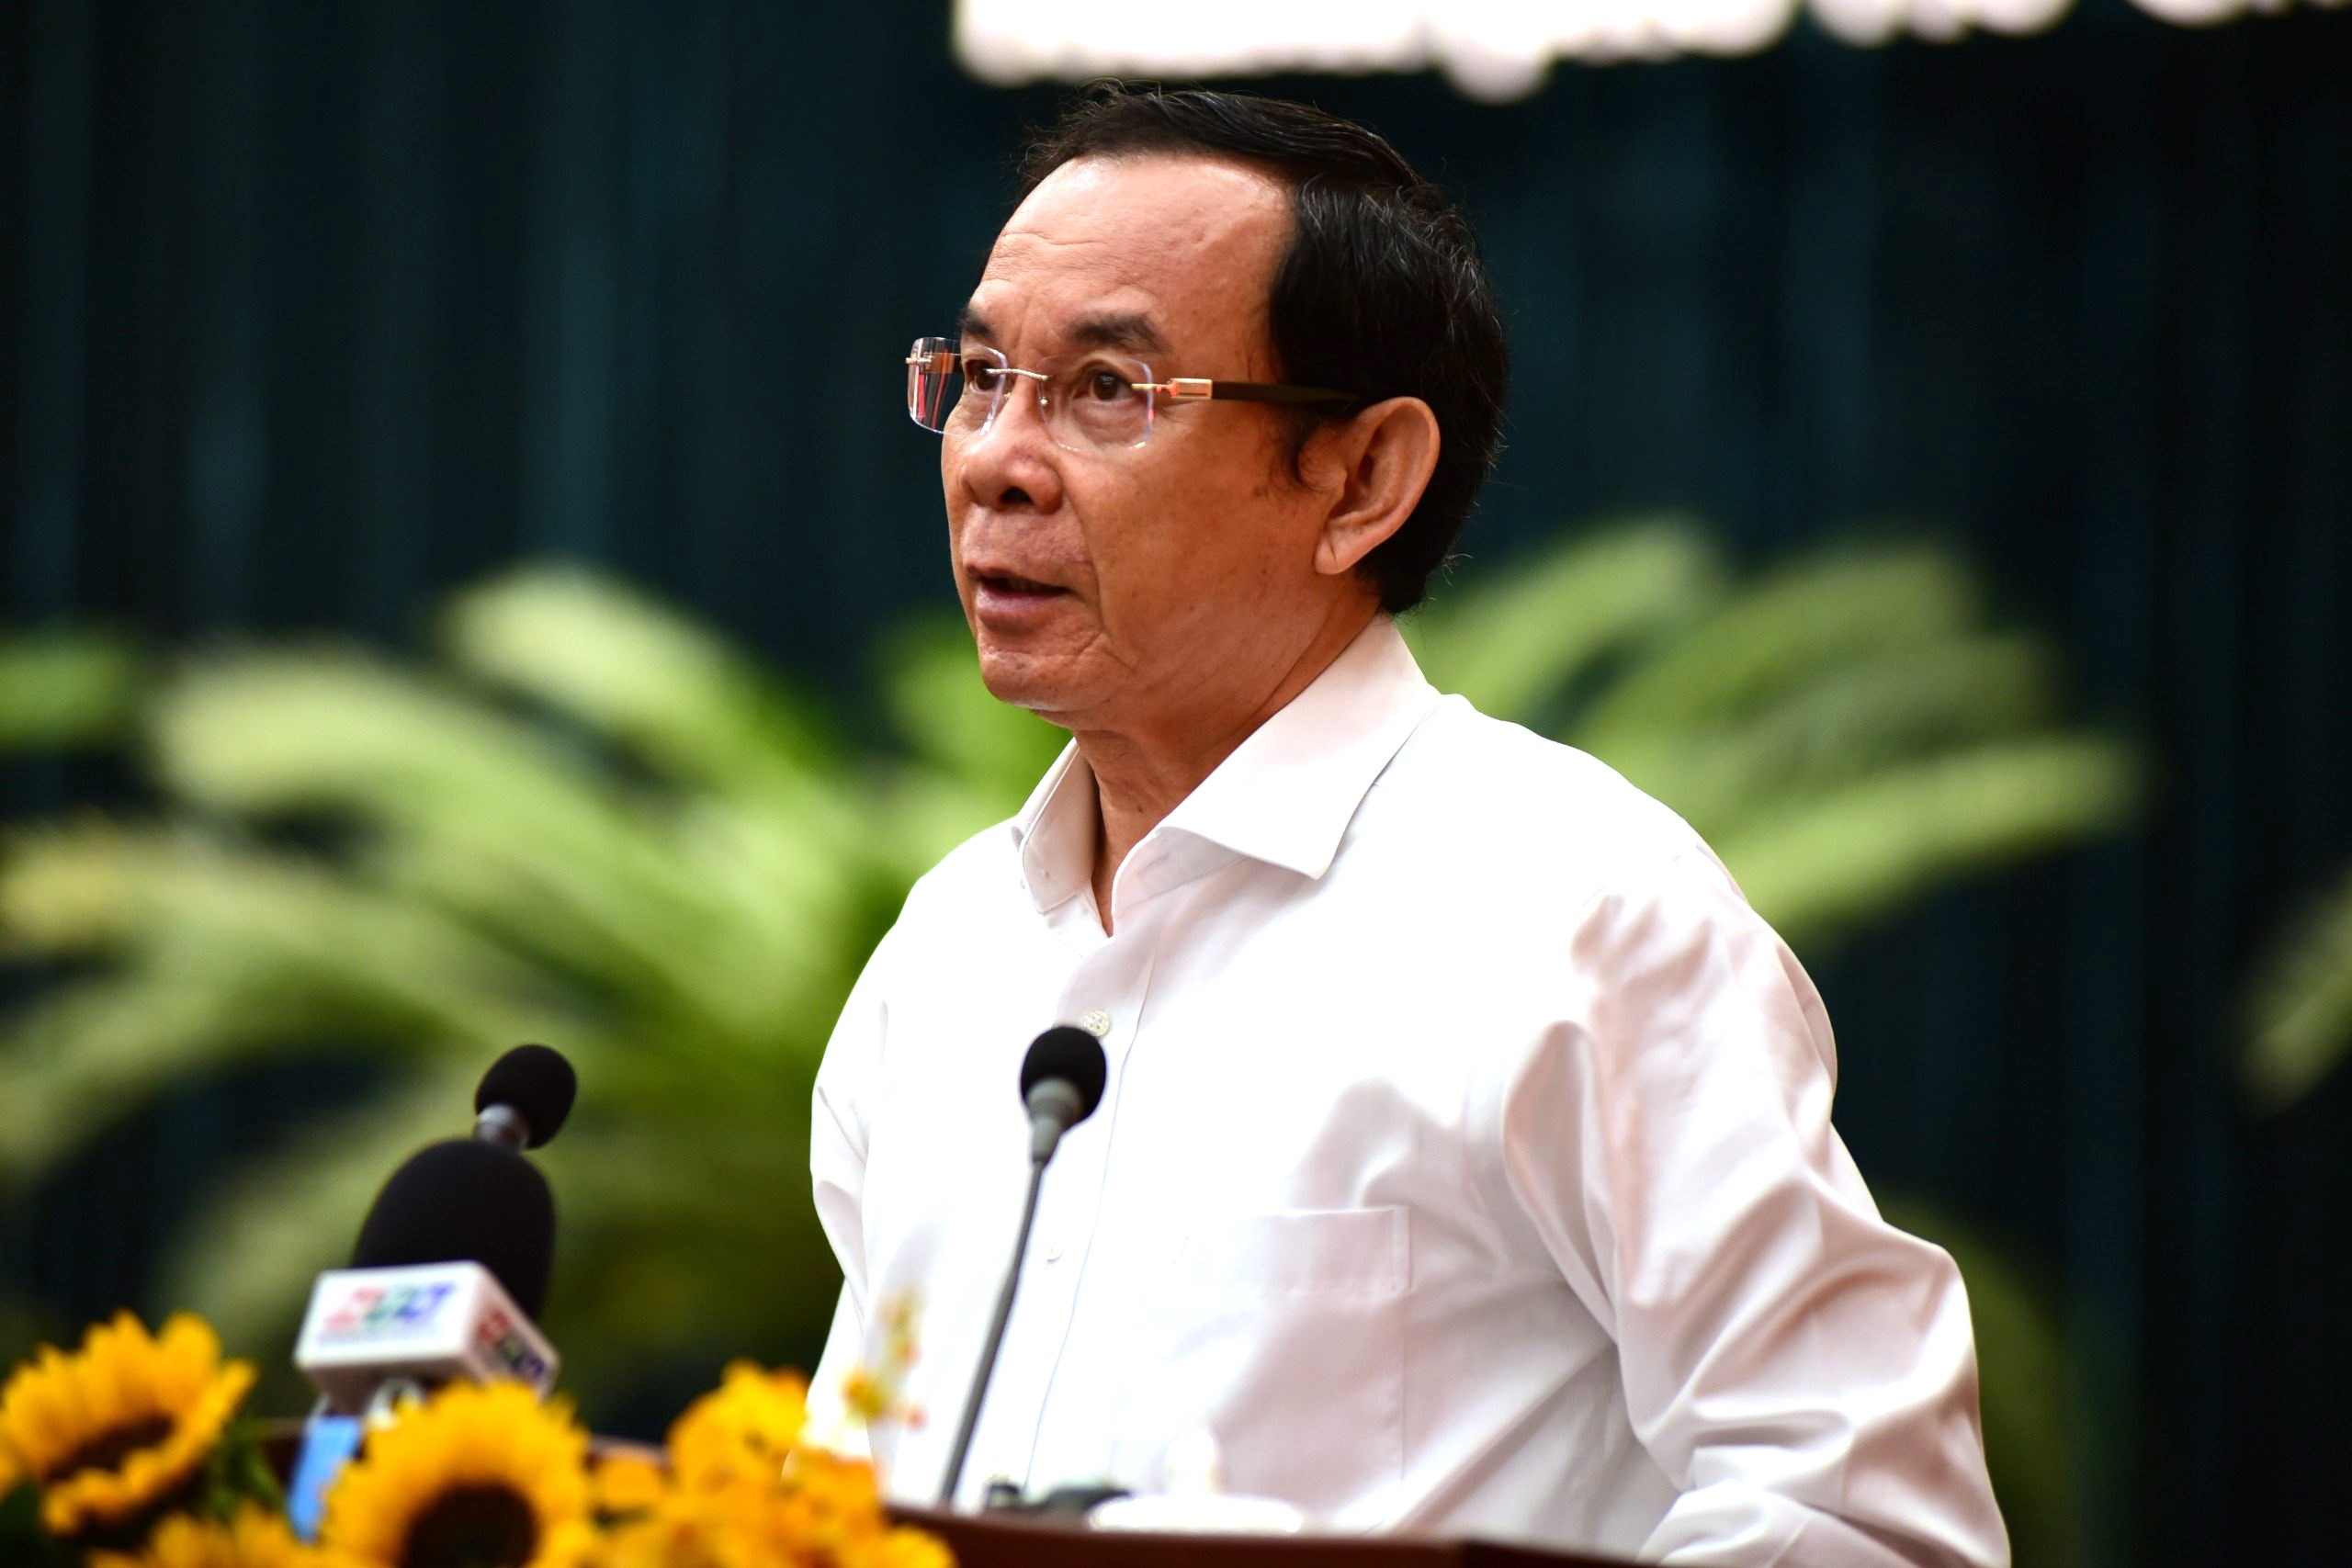 Bí thư Thành ủy TPHCM Nguyễn Văn Nên đề nghị kiểm tra lại việc tăng cường nồng độ cồn có ảnh hưởng kinh tế đêm.  Ảnh: Quang Huy